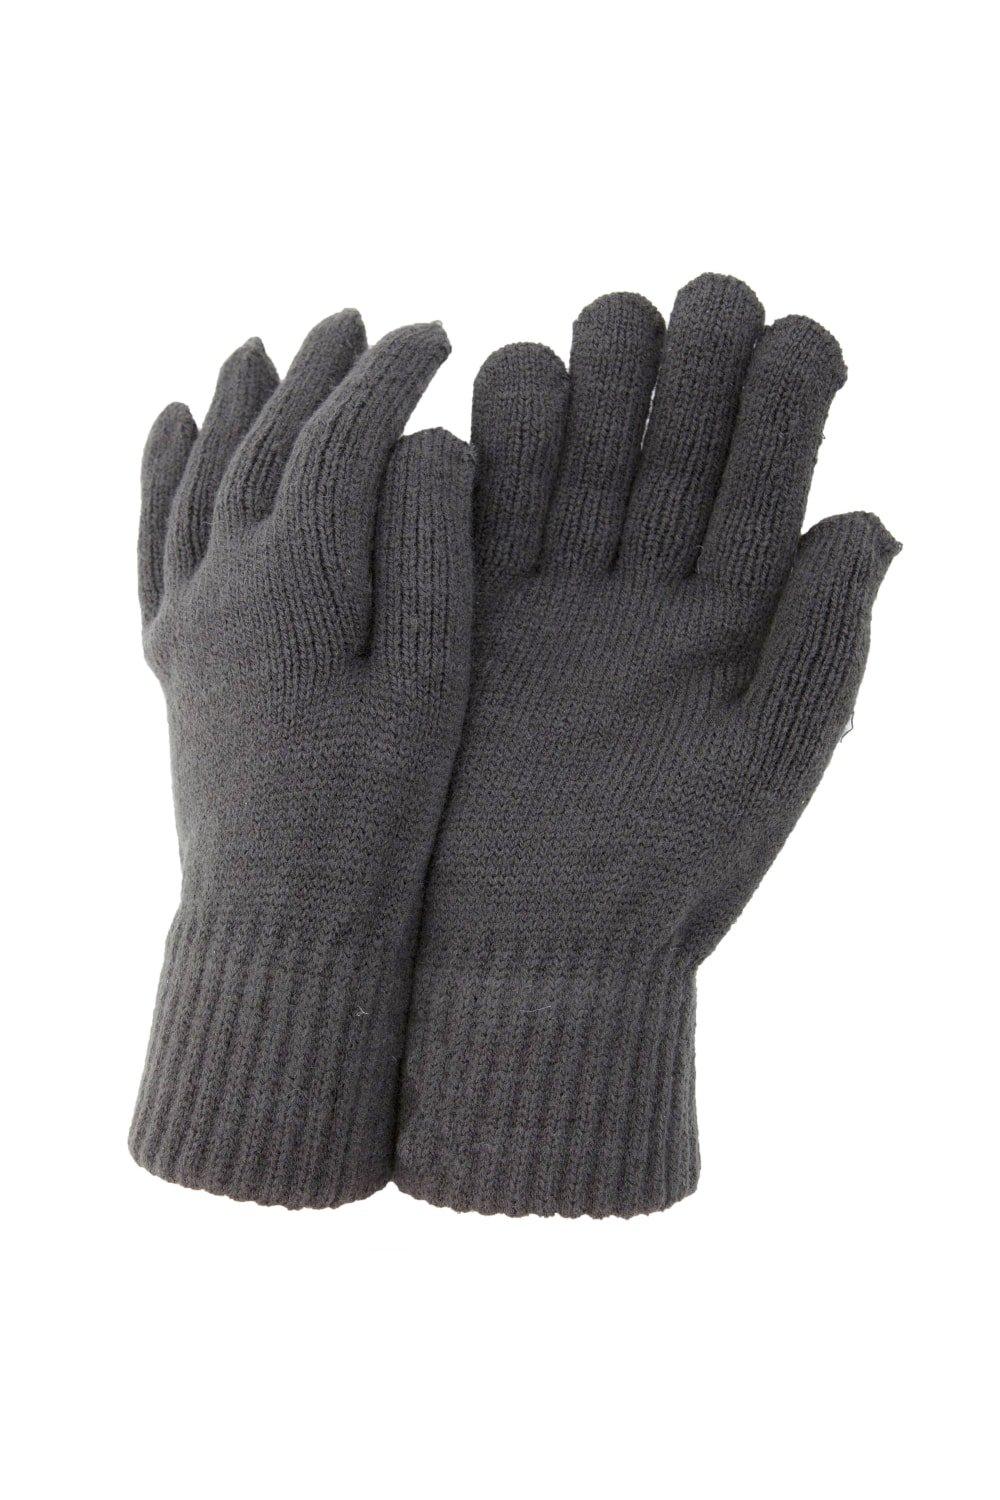 РАСПРОДАЖА - Термовязаные зимние перчатки Universal Textiles, серый распродажа термовязаные зимние перчатки universal textiles черный